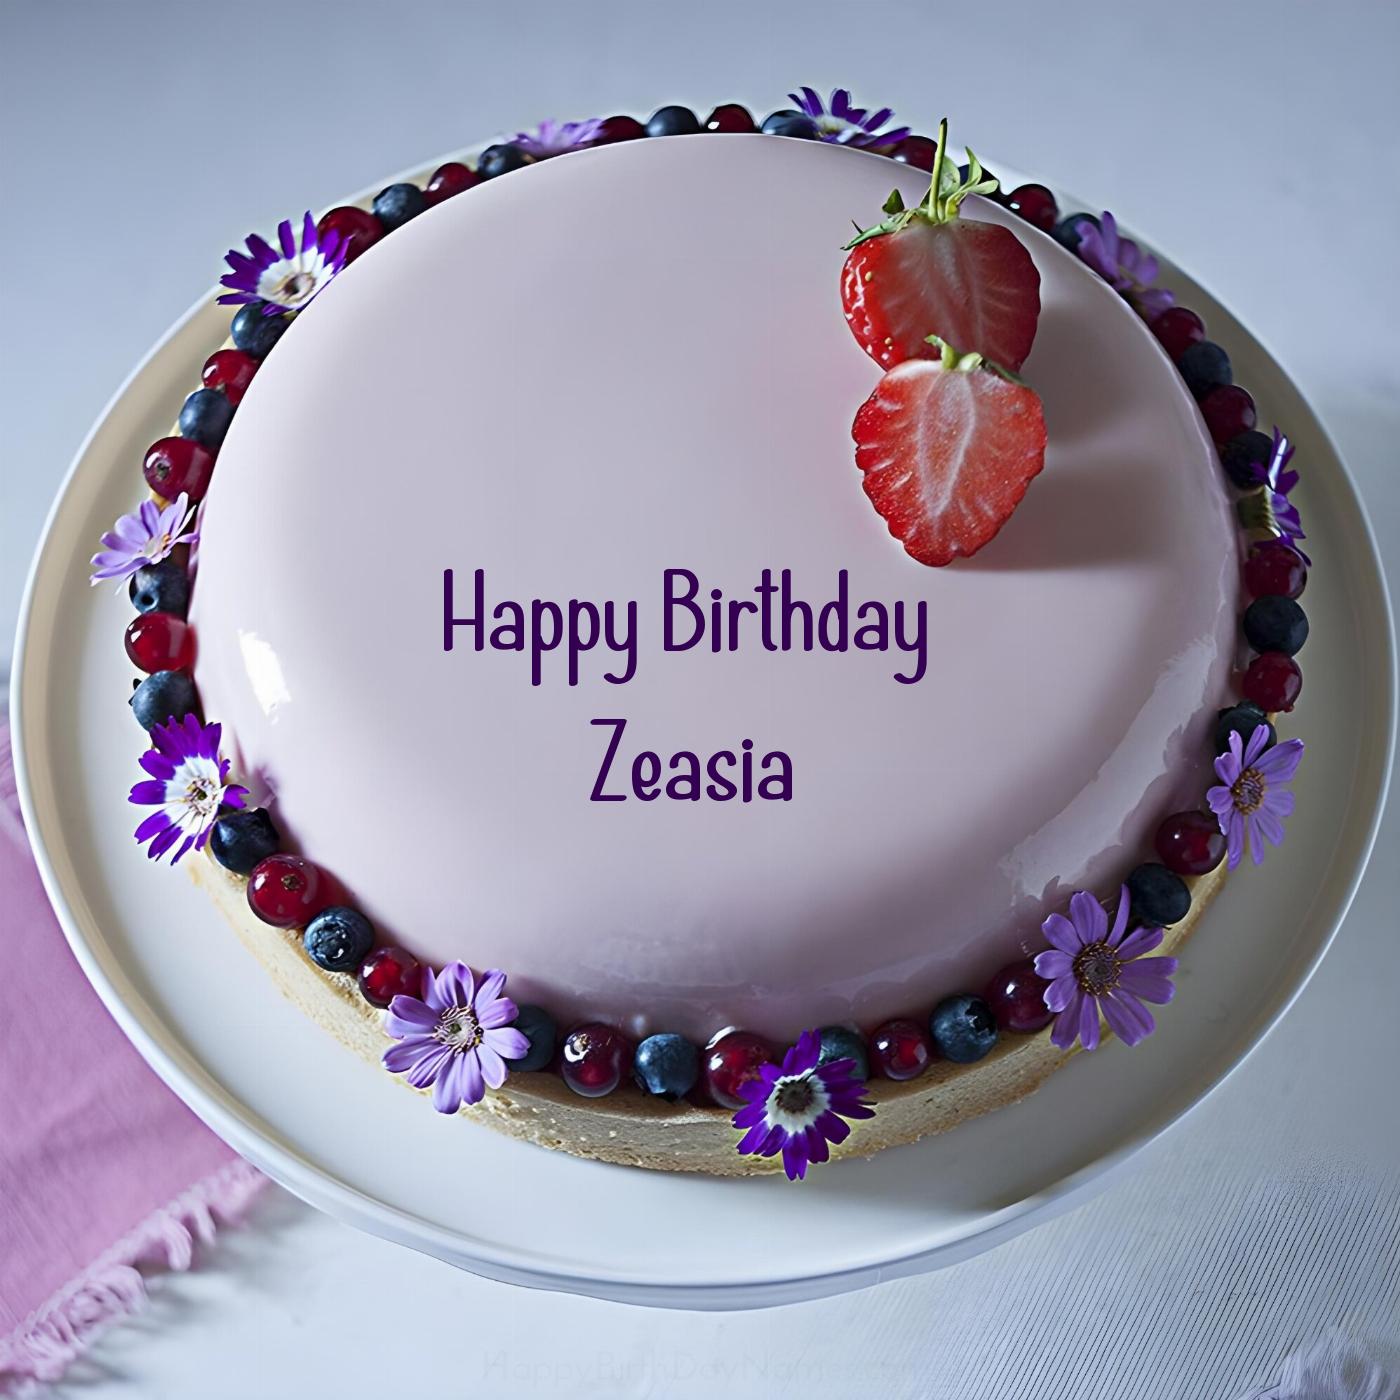 Happy Birthday Zeasia Strawberry Flowers Cake